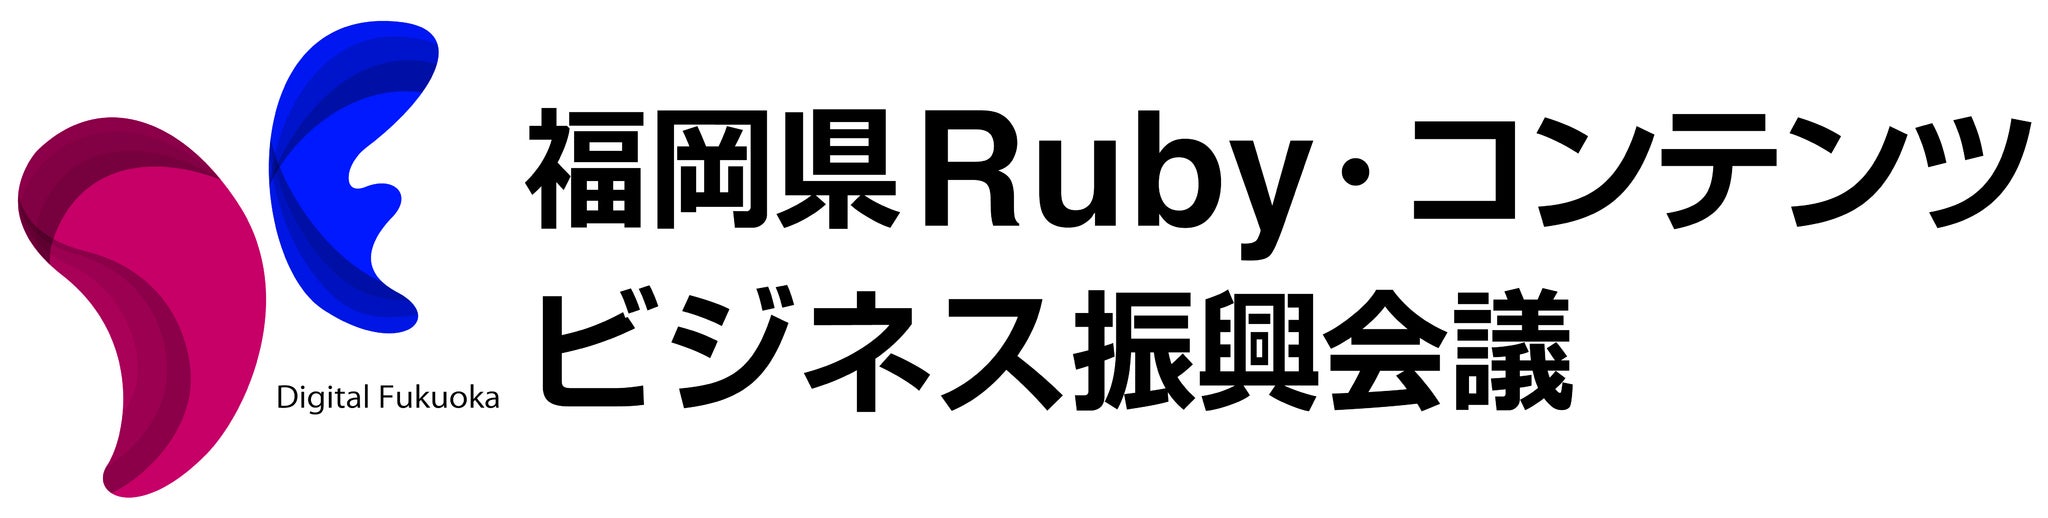 福岡県ruby コンテンツビジネス振興会議のプレスリリース Pr Times